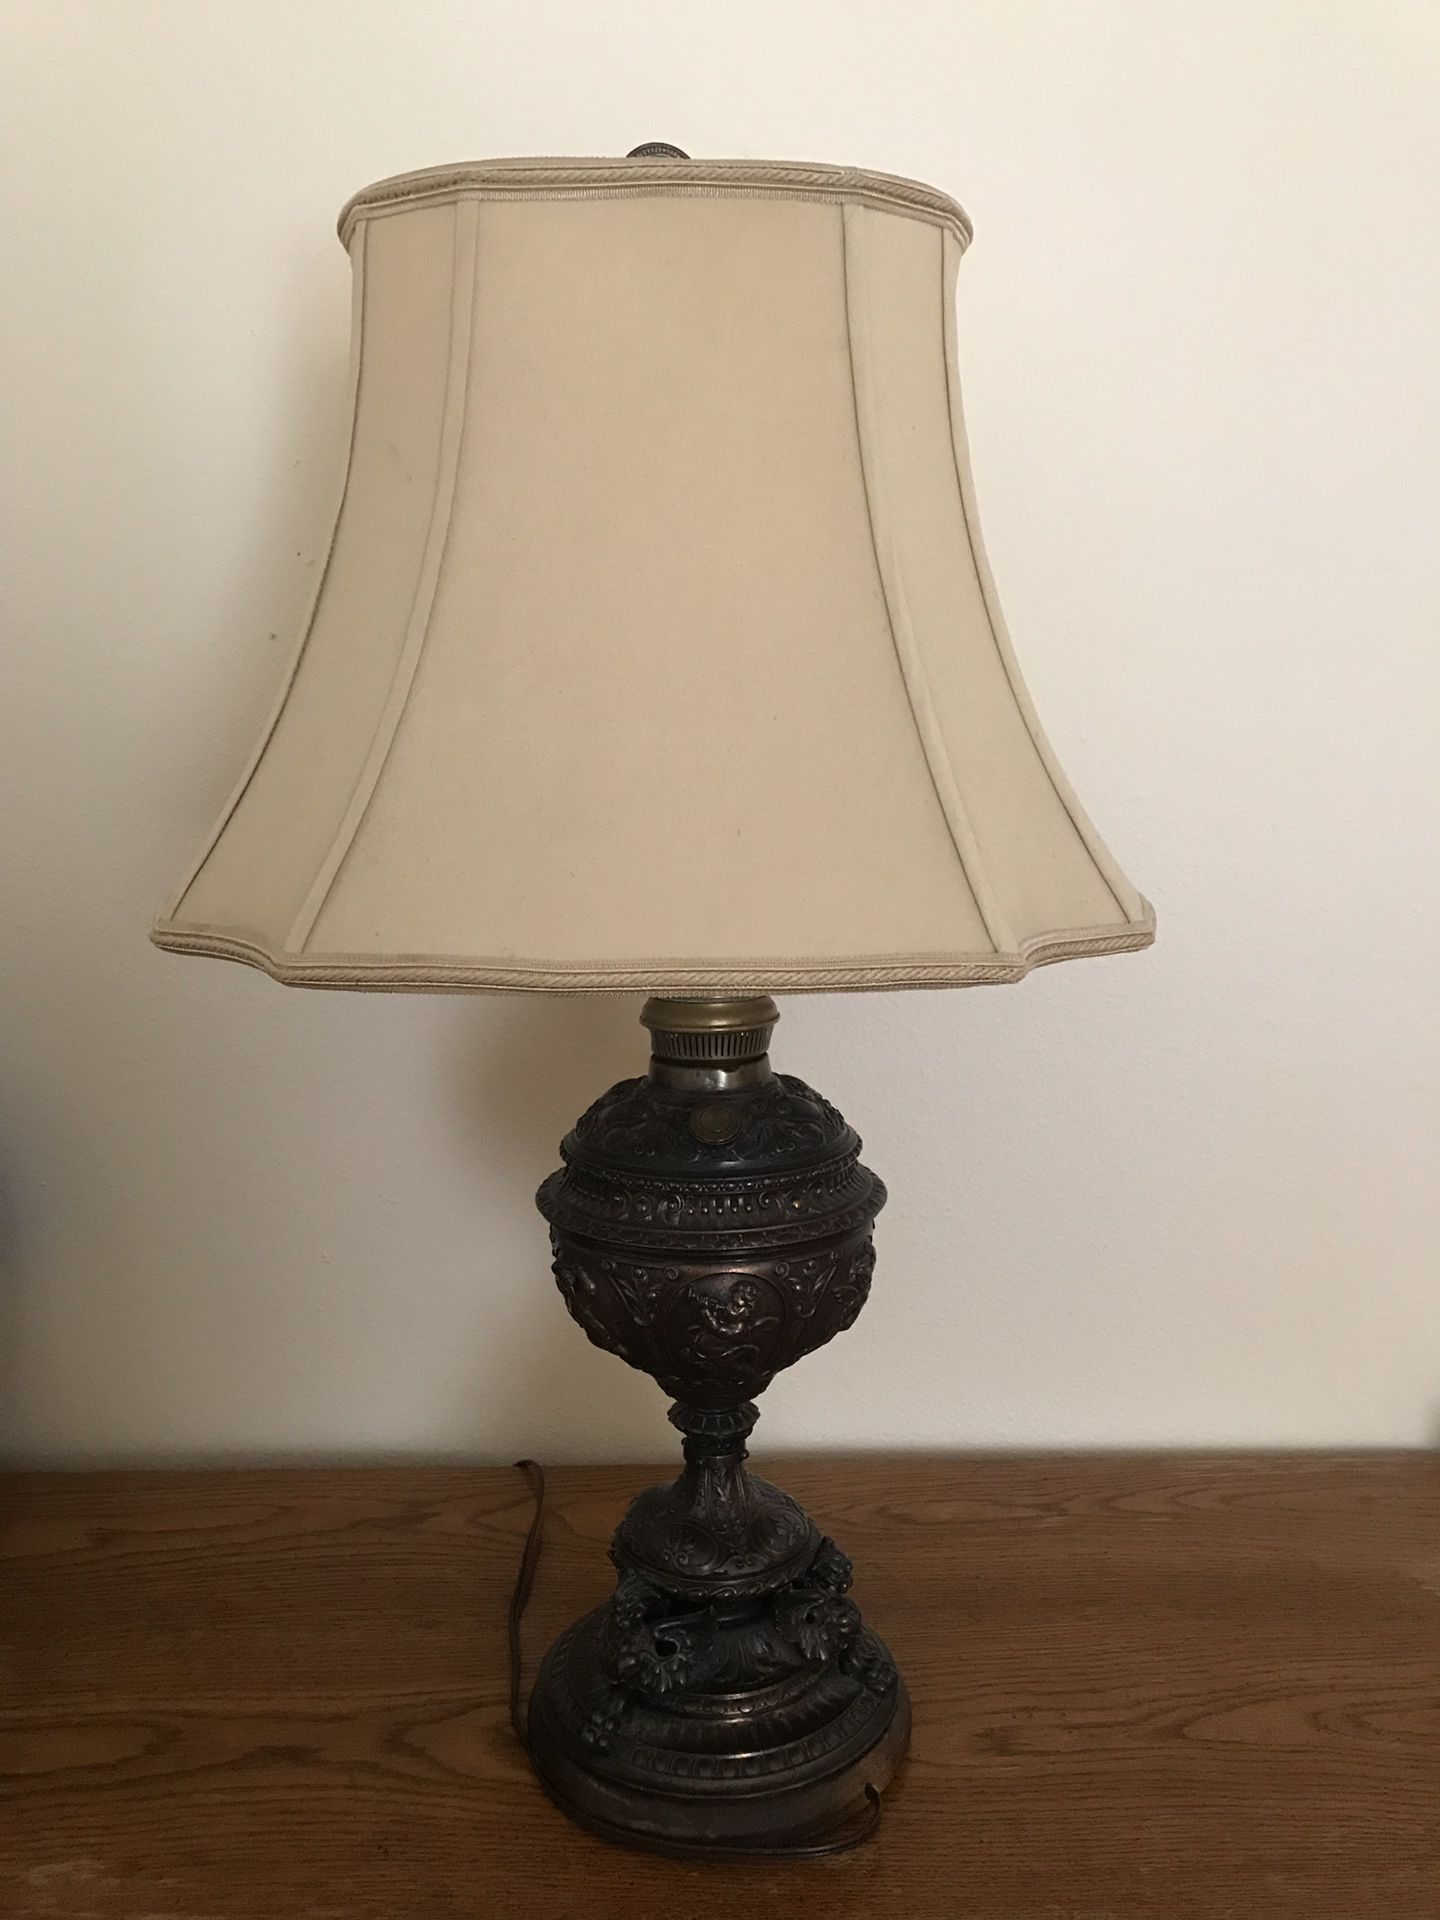 Antique/ Vintage bronze lamp 30”